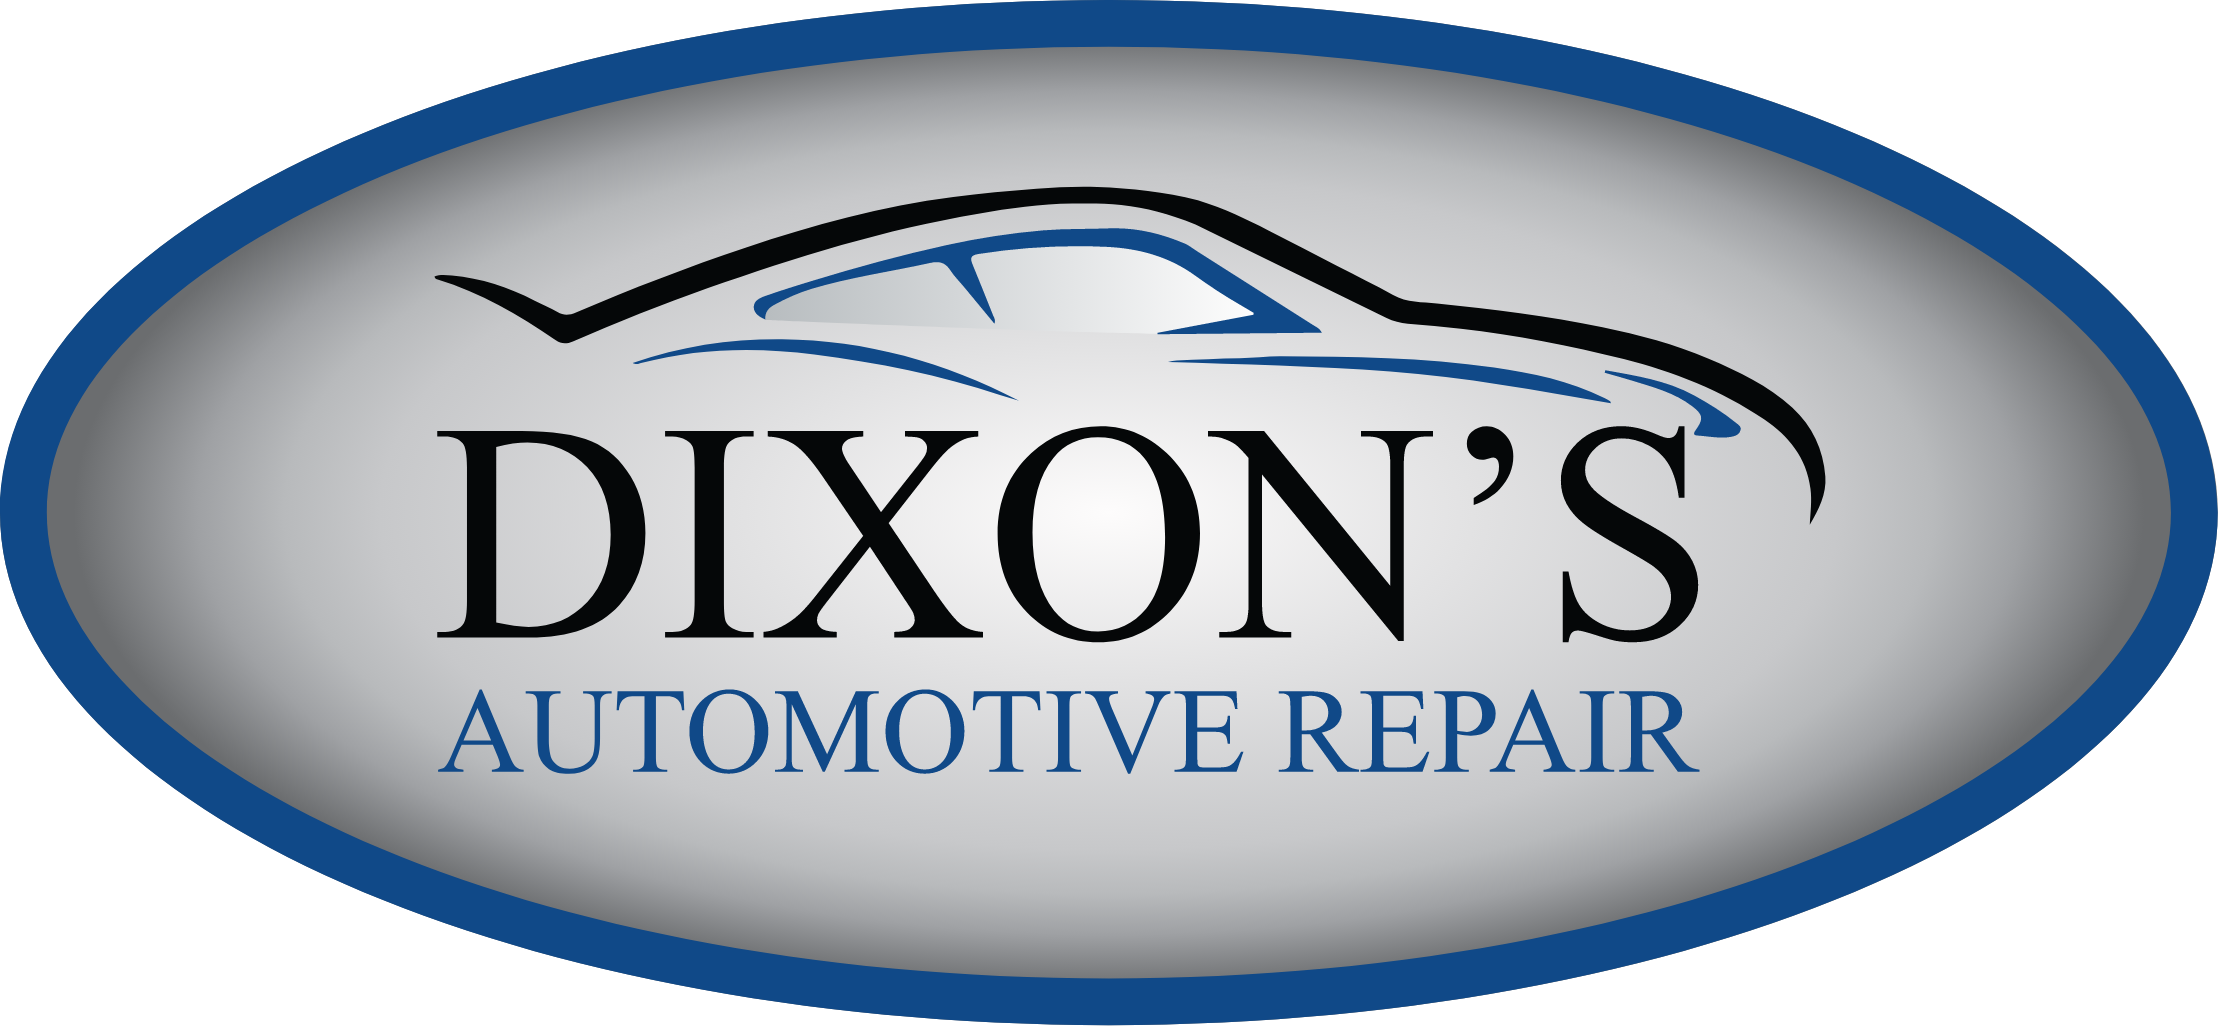 Dixon's Automotive Repair